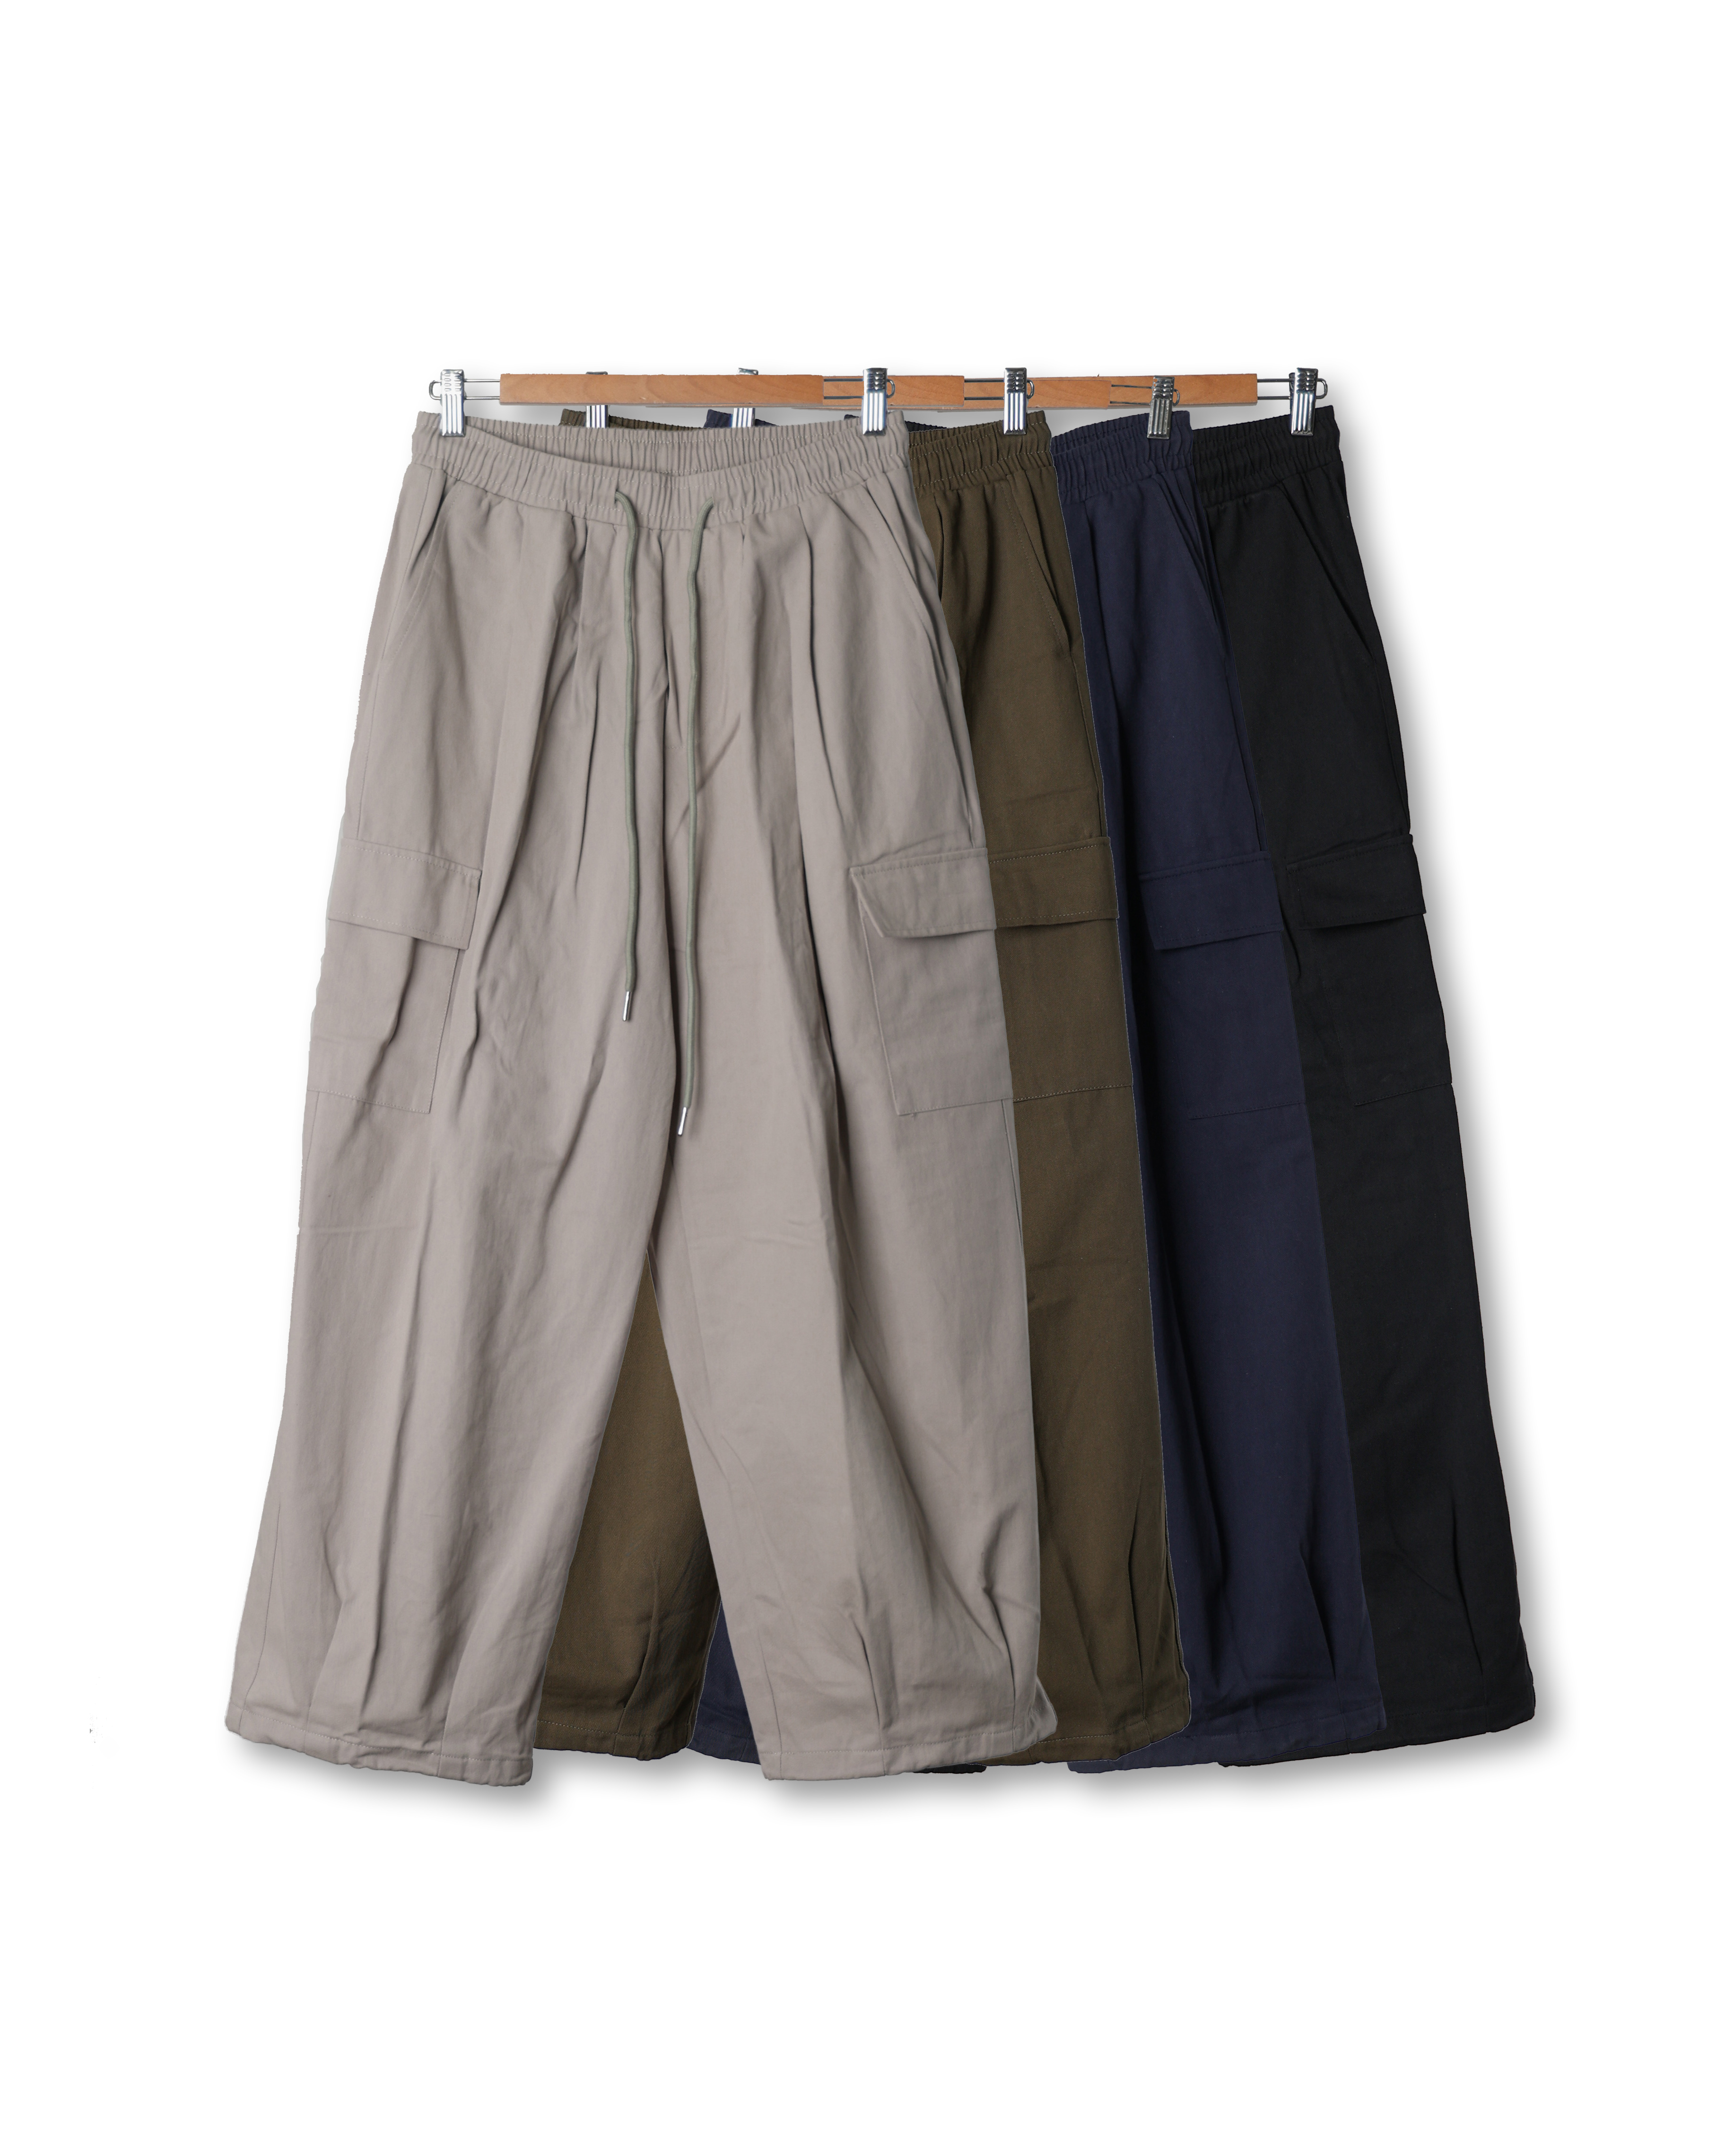 N.V.S Big Cargo Wide Cotton Pants (Black/Gray/Navy/Olive)